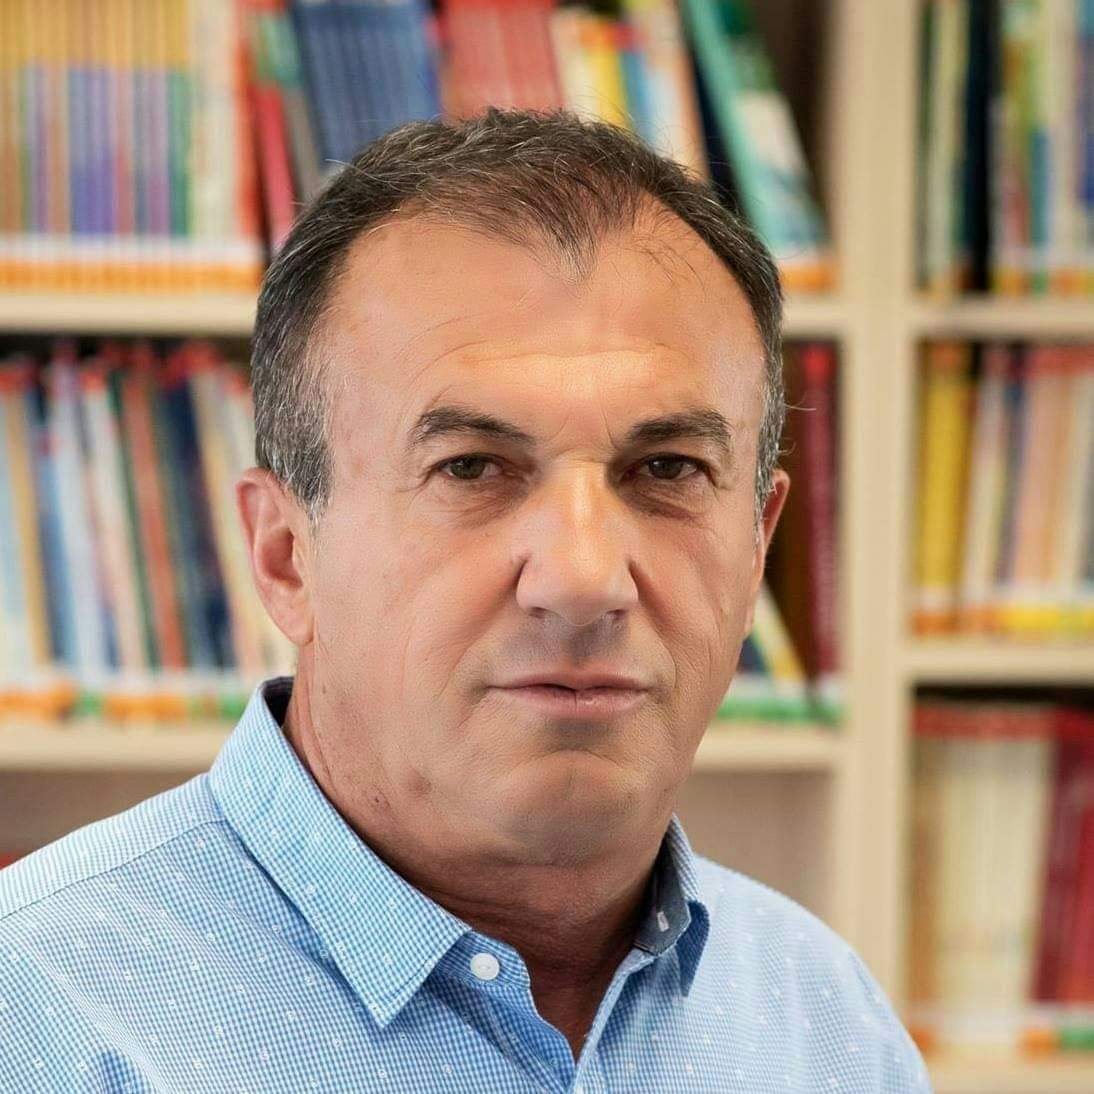 Καλαμάτα: Έφυγε από τη ζωή ο δάσκαλος Γιάννης Χριστόπουλος